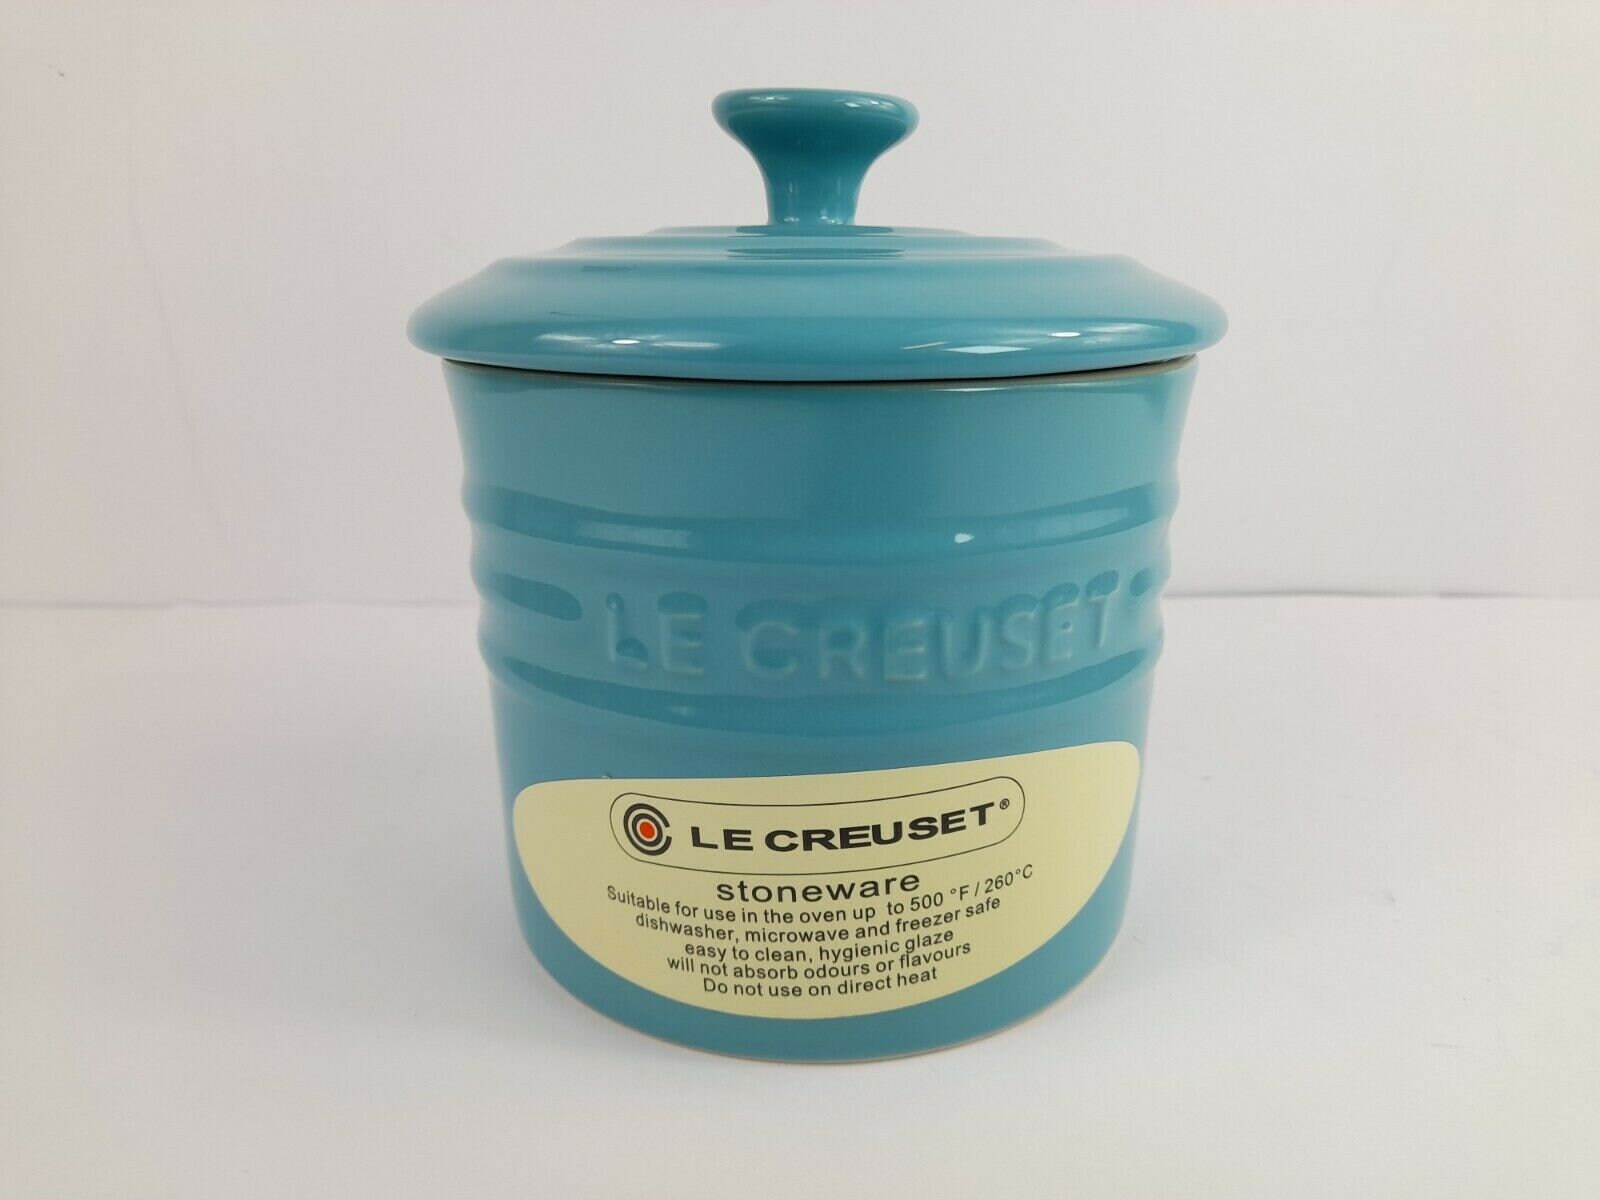 kold Vend tilbage lammelse LE CREUSET Turquoise Teal Stoneware Storage Jar With Lid 0.8L - Etsy